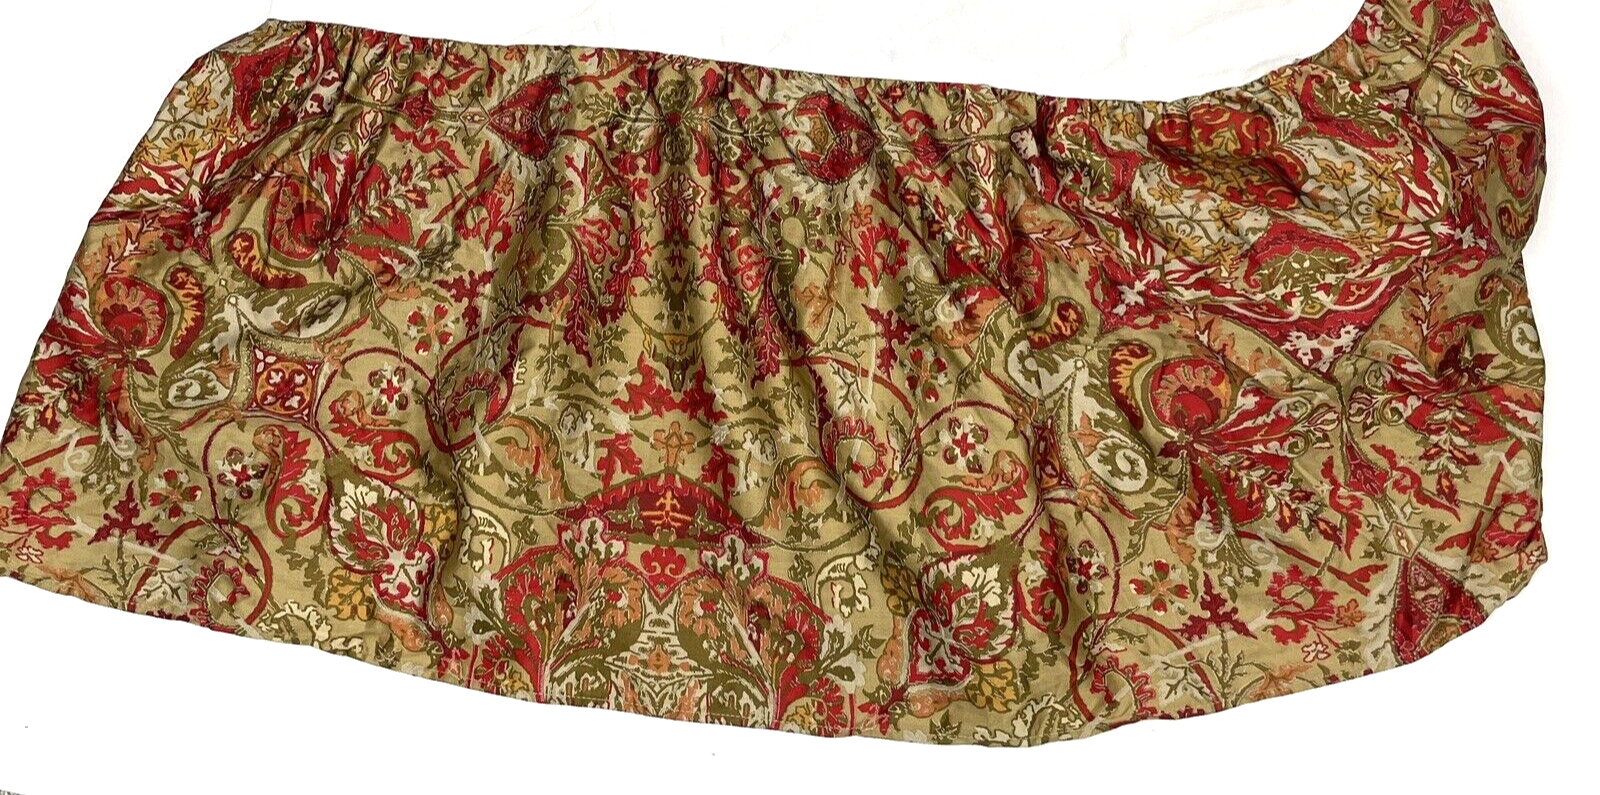 Ralph Lauren Randolph Queen Bed Skirt Dust Ruffle Red Paisley Cotton Sateen - $60.00